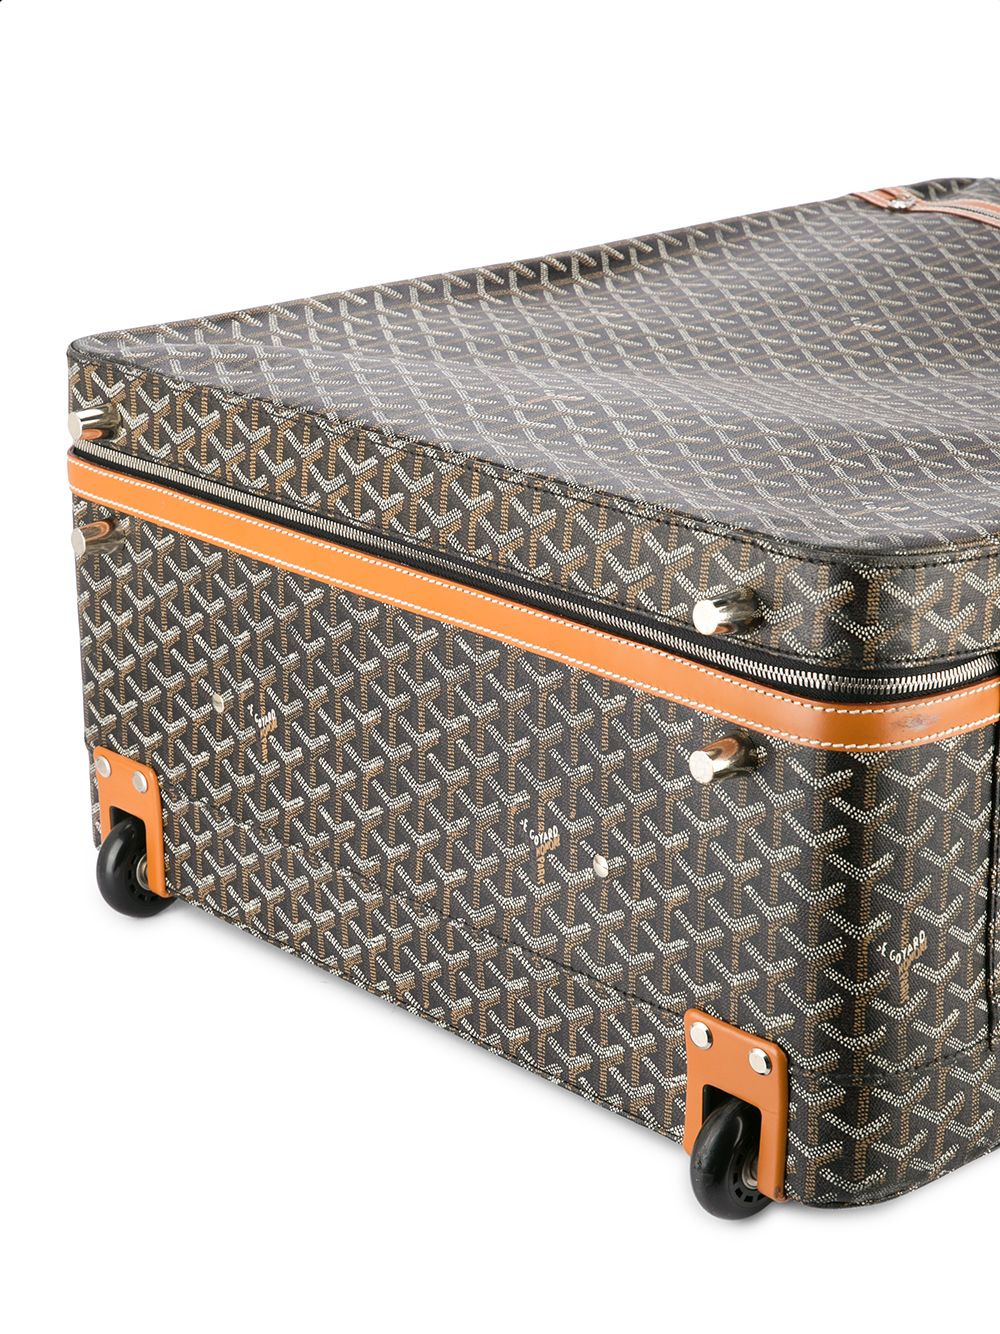 Goyard Carry On Travel Luggage - Farfetch